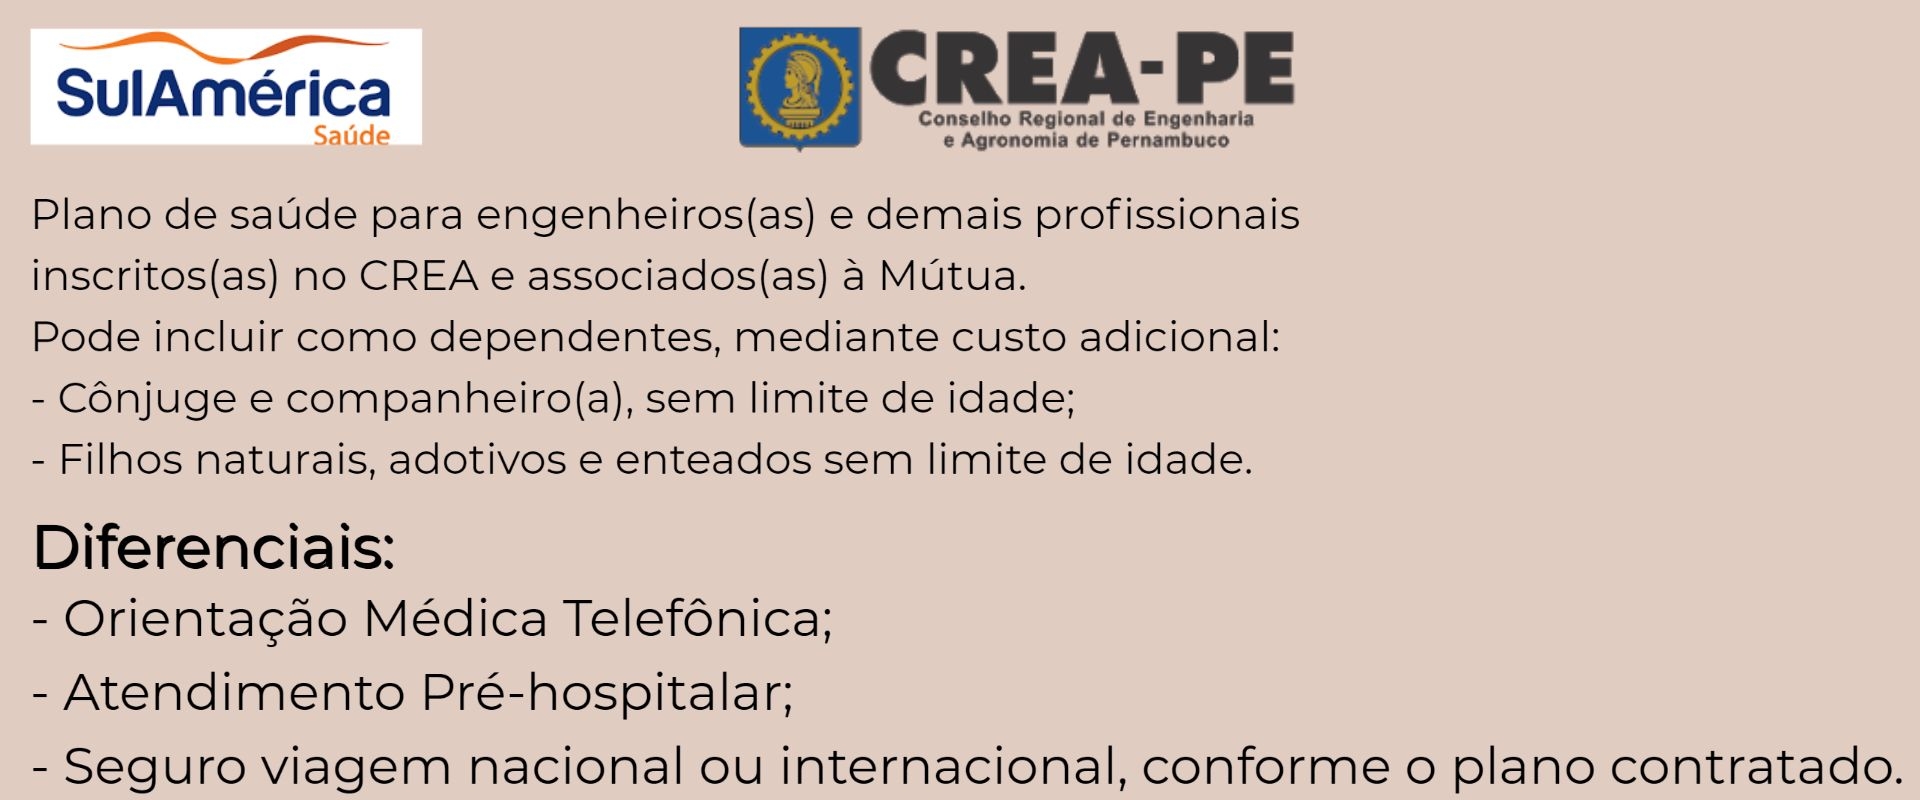 Sul América CREA-PE